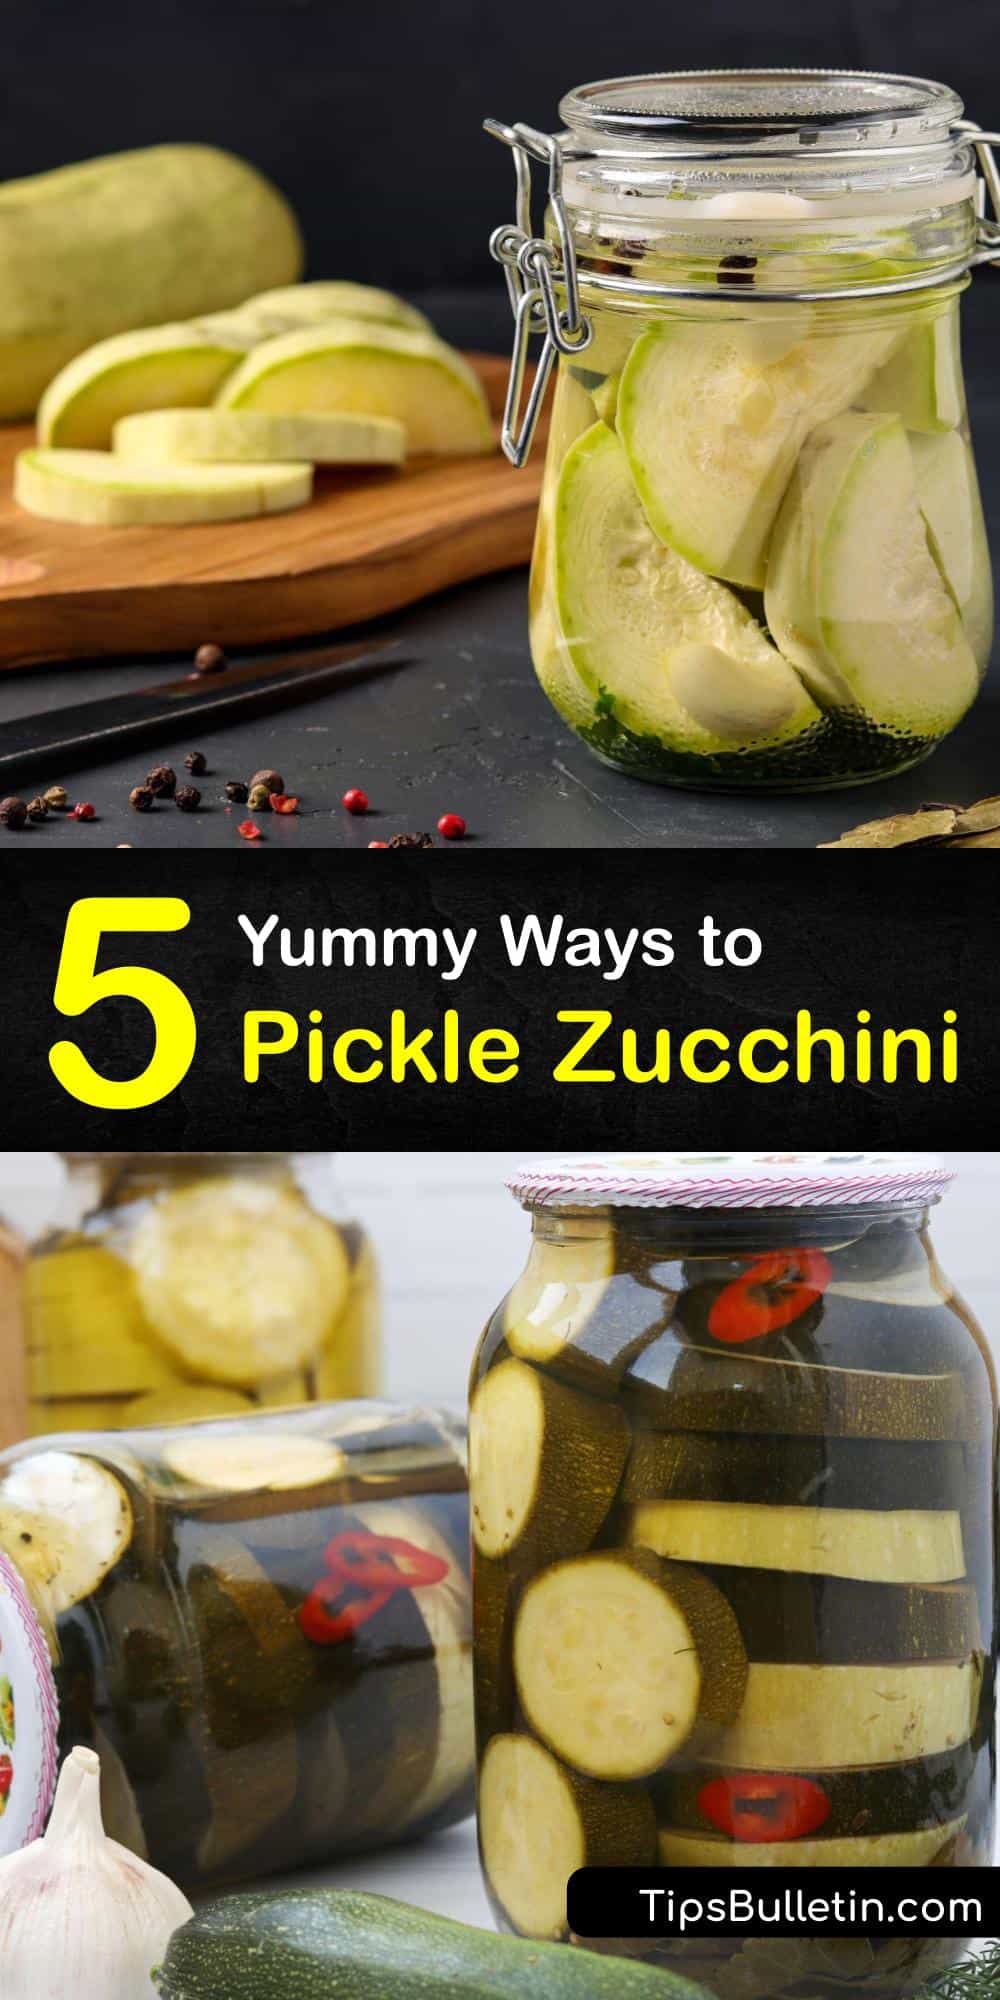 5 Yummy Ways to Pickle Zucchini